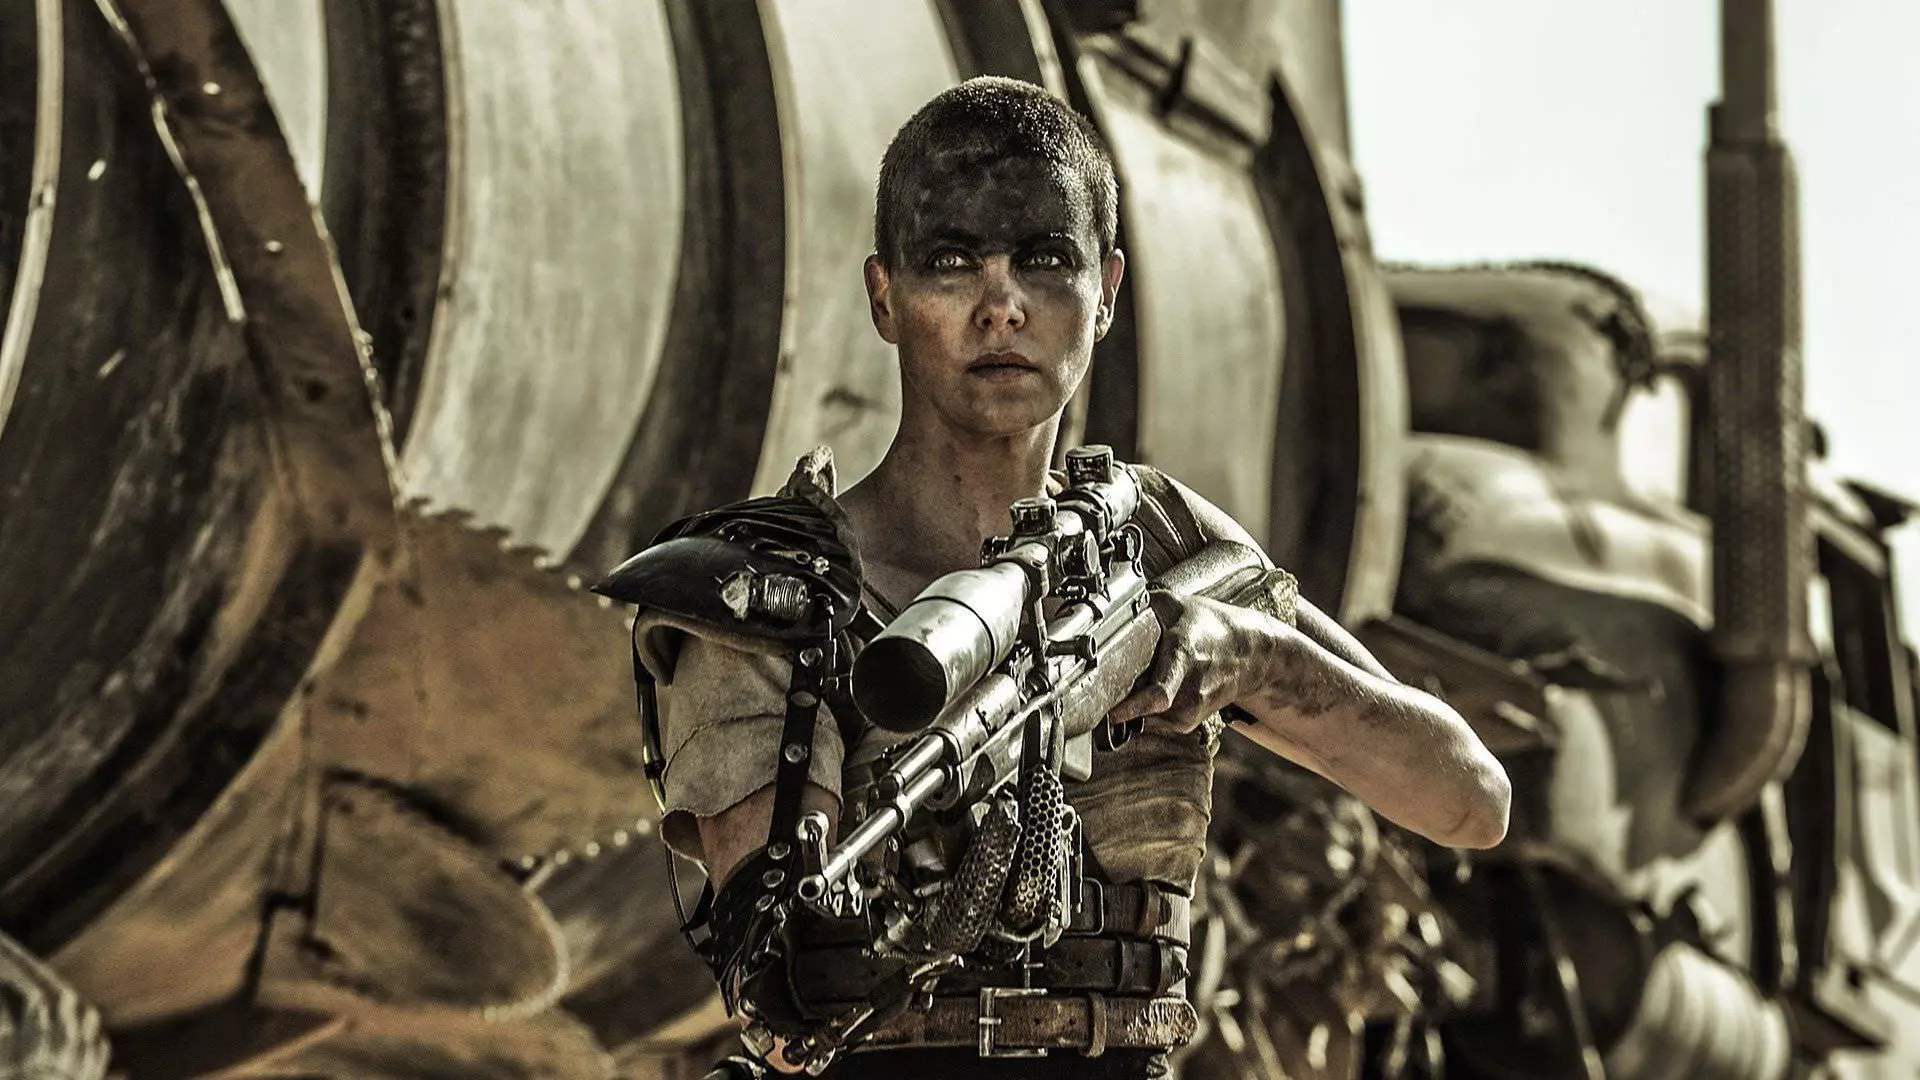 شارلیز ترون در نقش فیوروسا با اسنایپری در دست در کنار تانکر آب در فیلم Mad Max: Fury Road